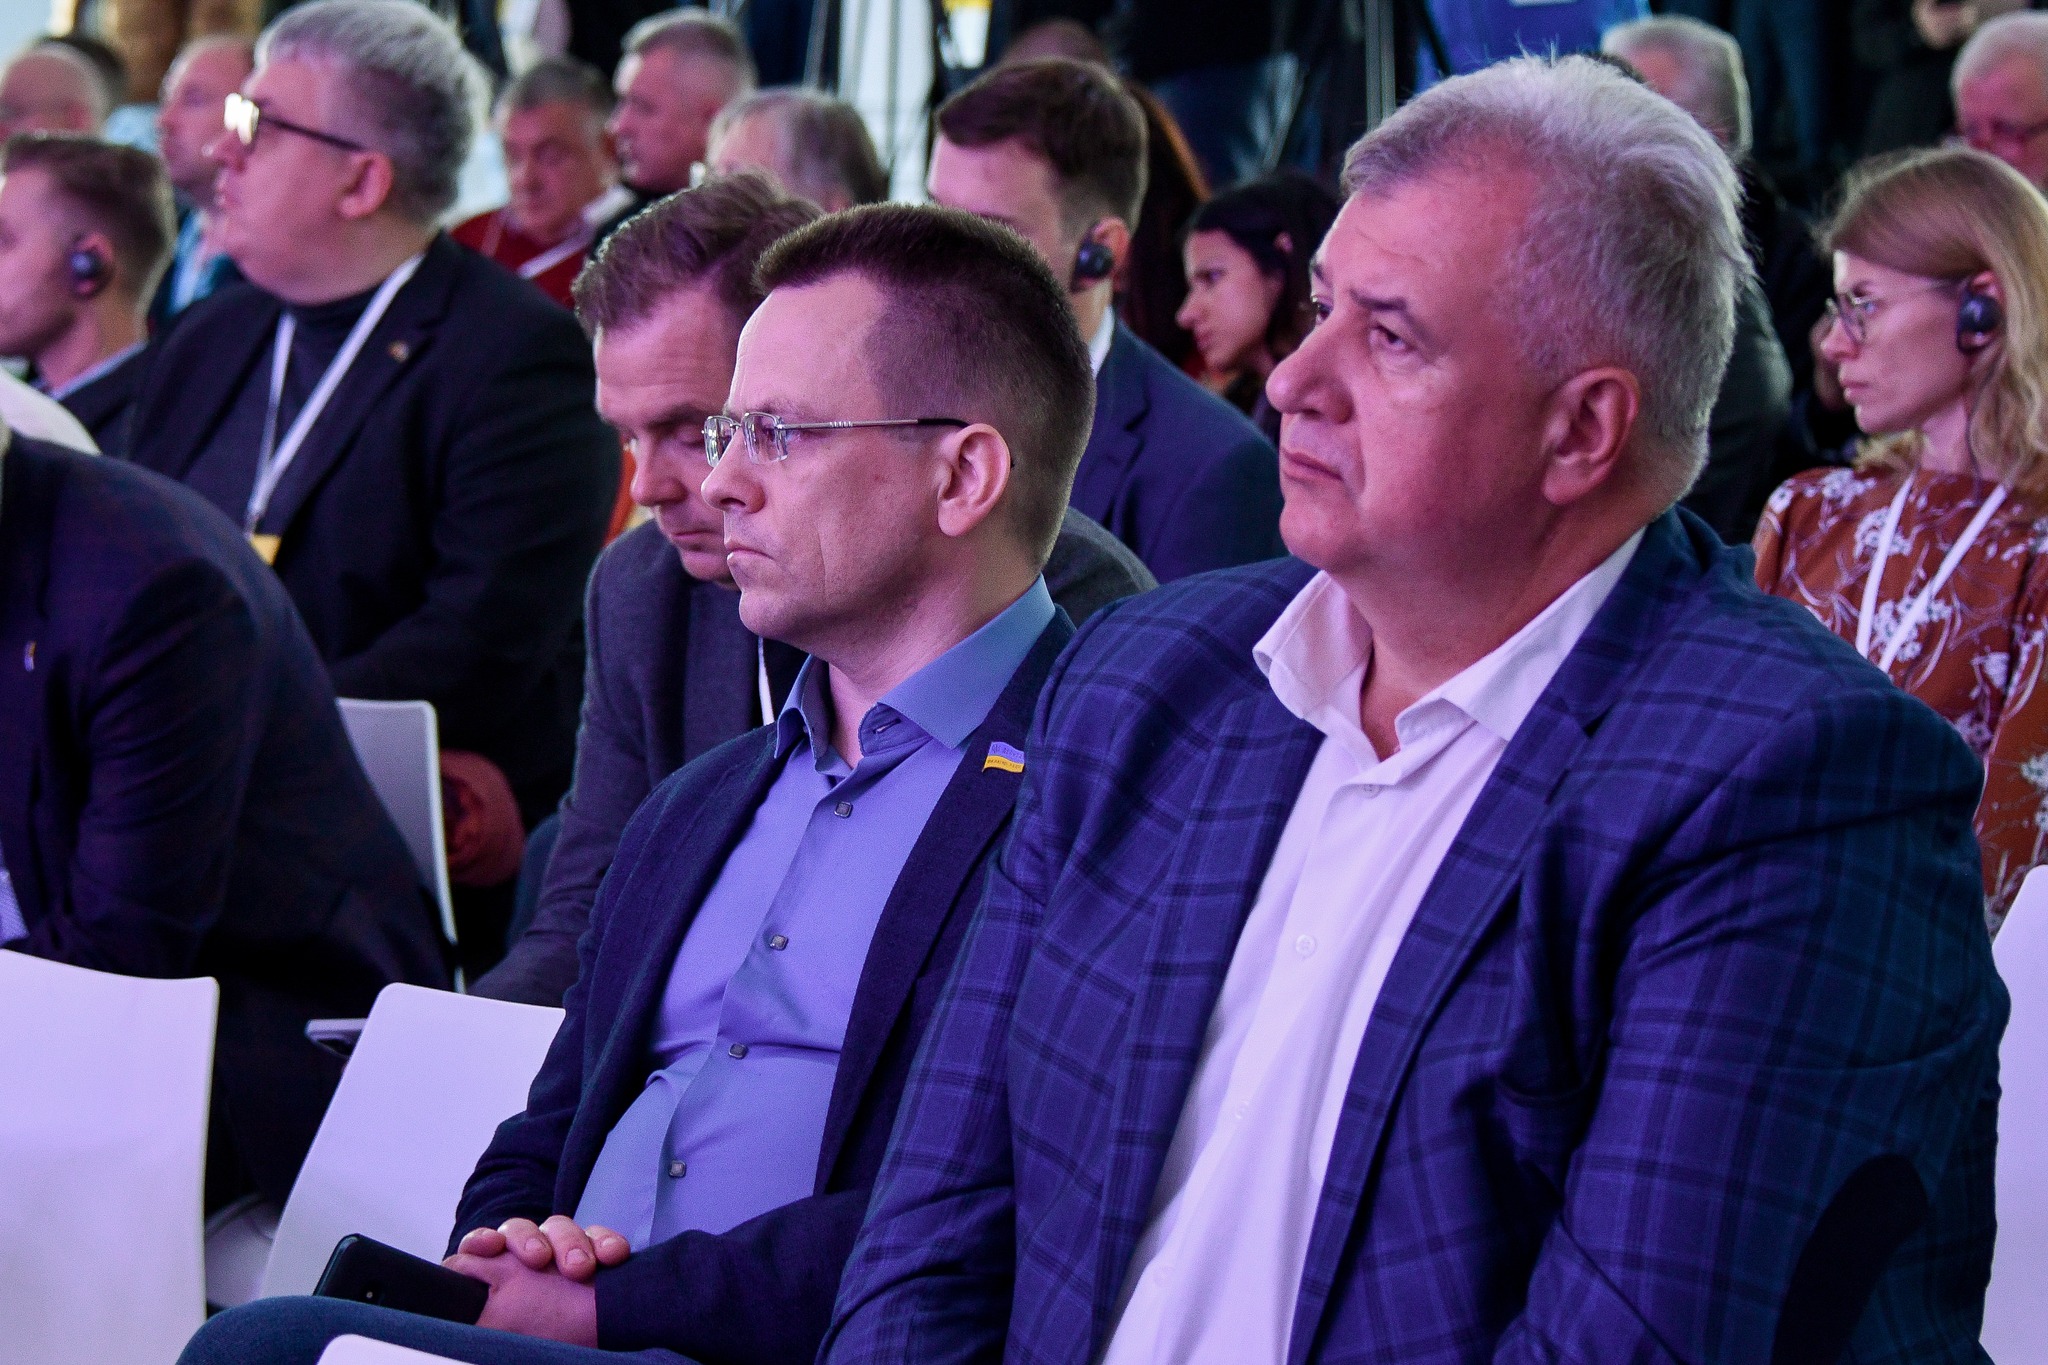 Депутати Житомирської обласної ради взяли участь у Першому форумі відновлення Житомирщини